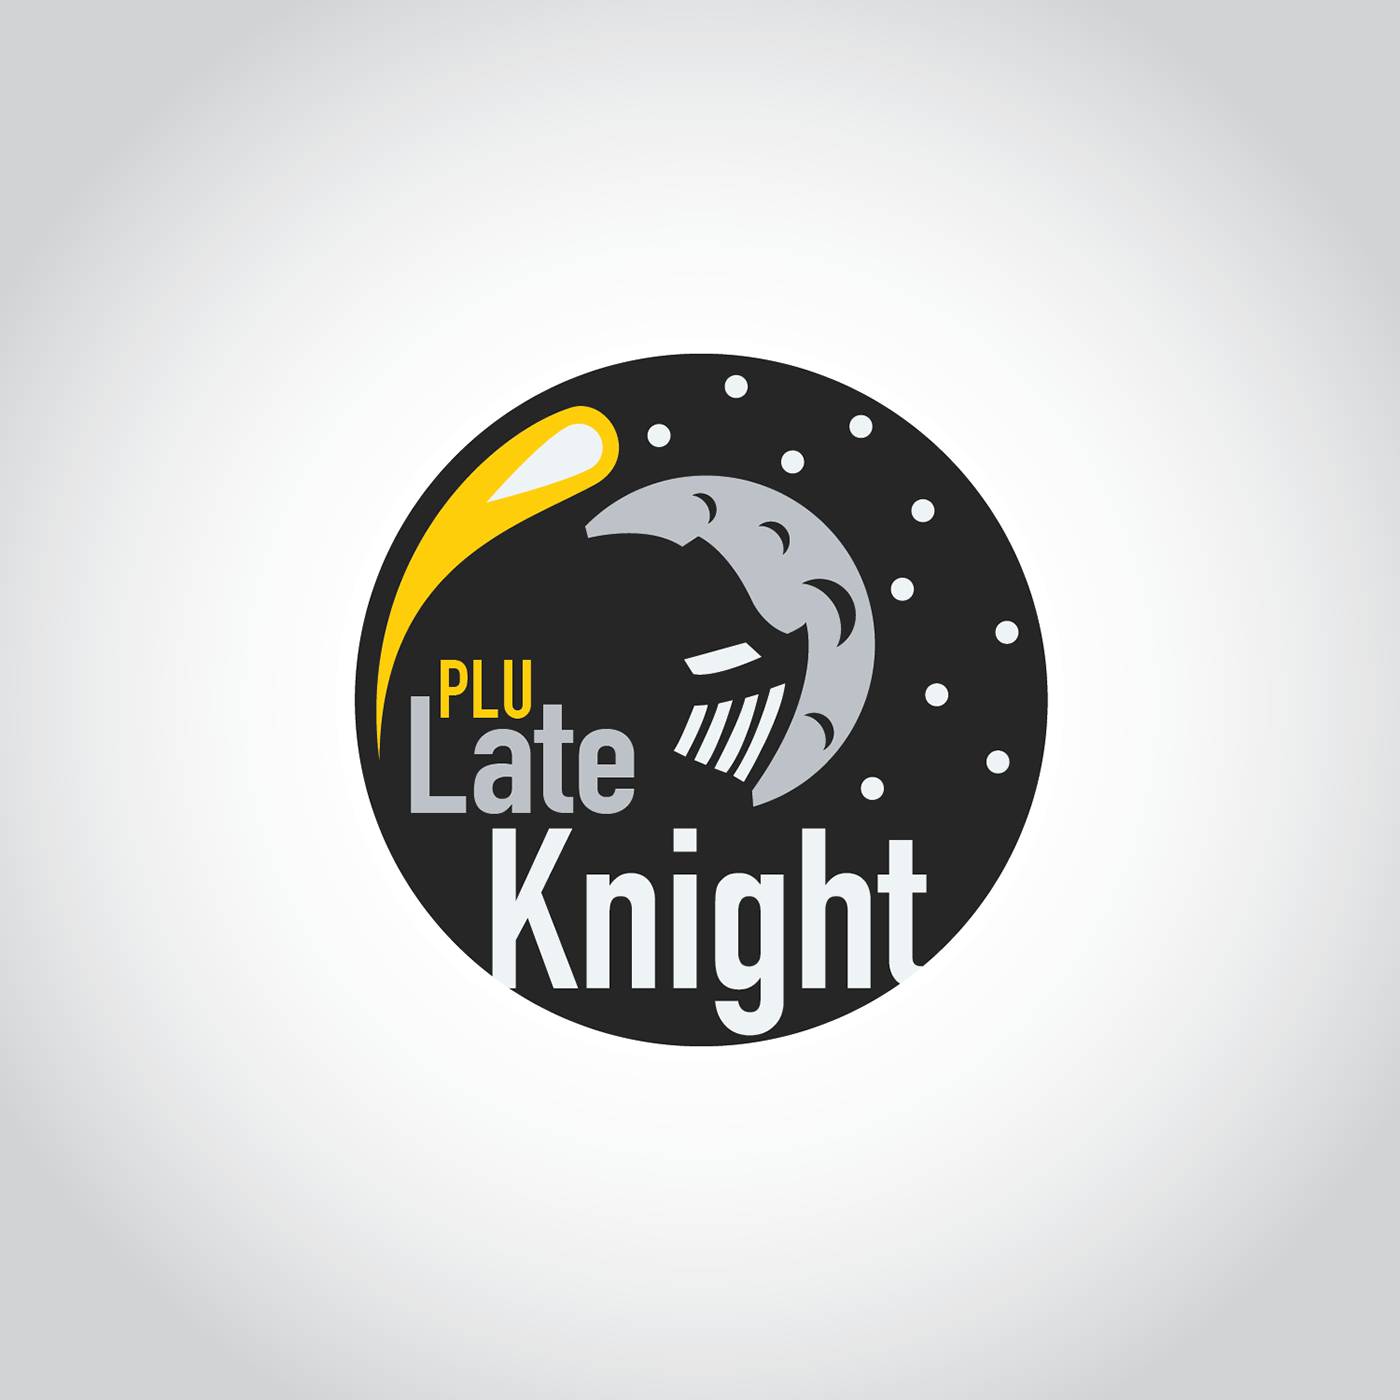 Plu Logo - PLU Late Knight Logo